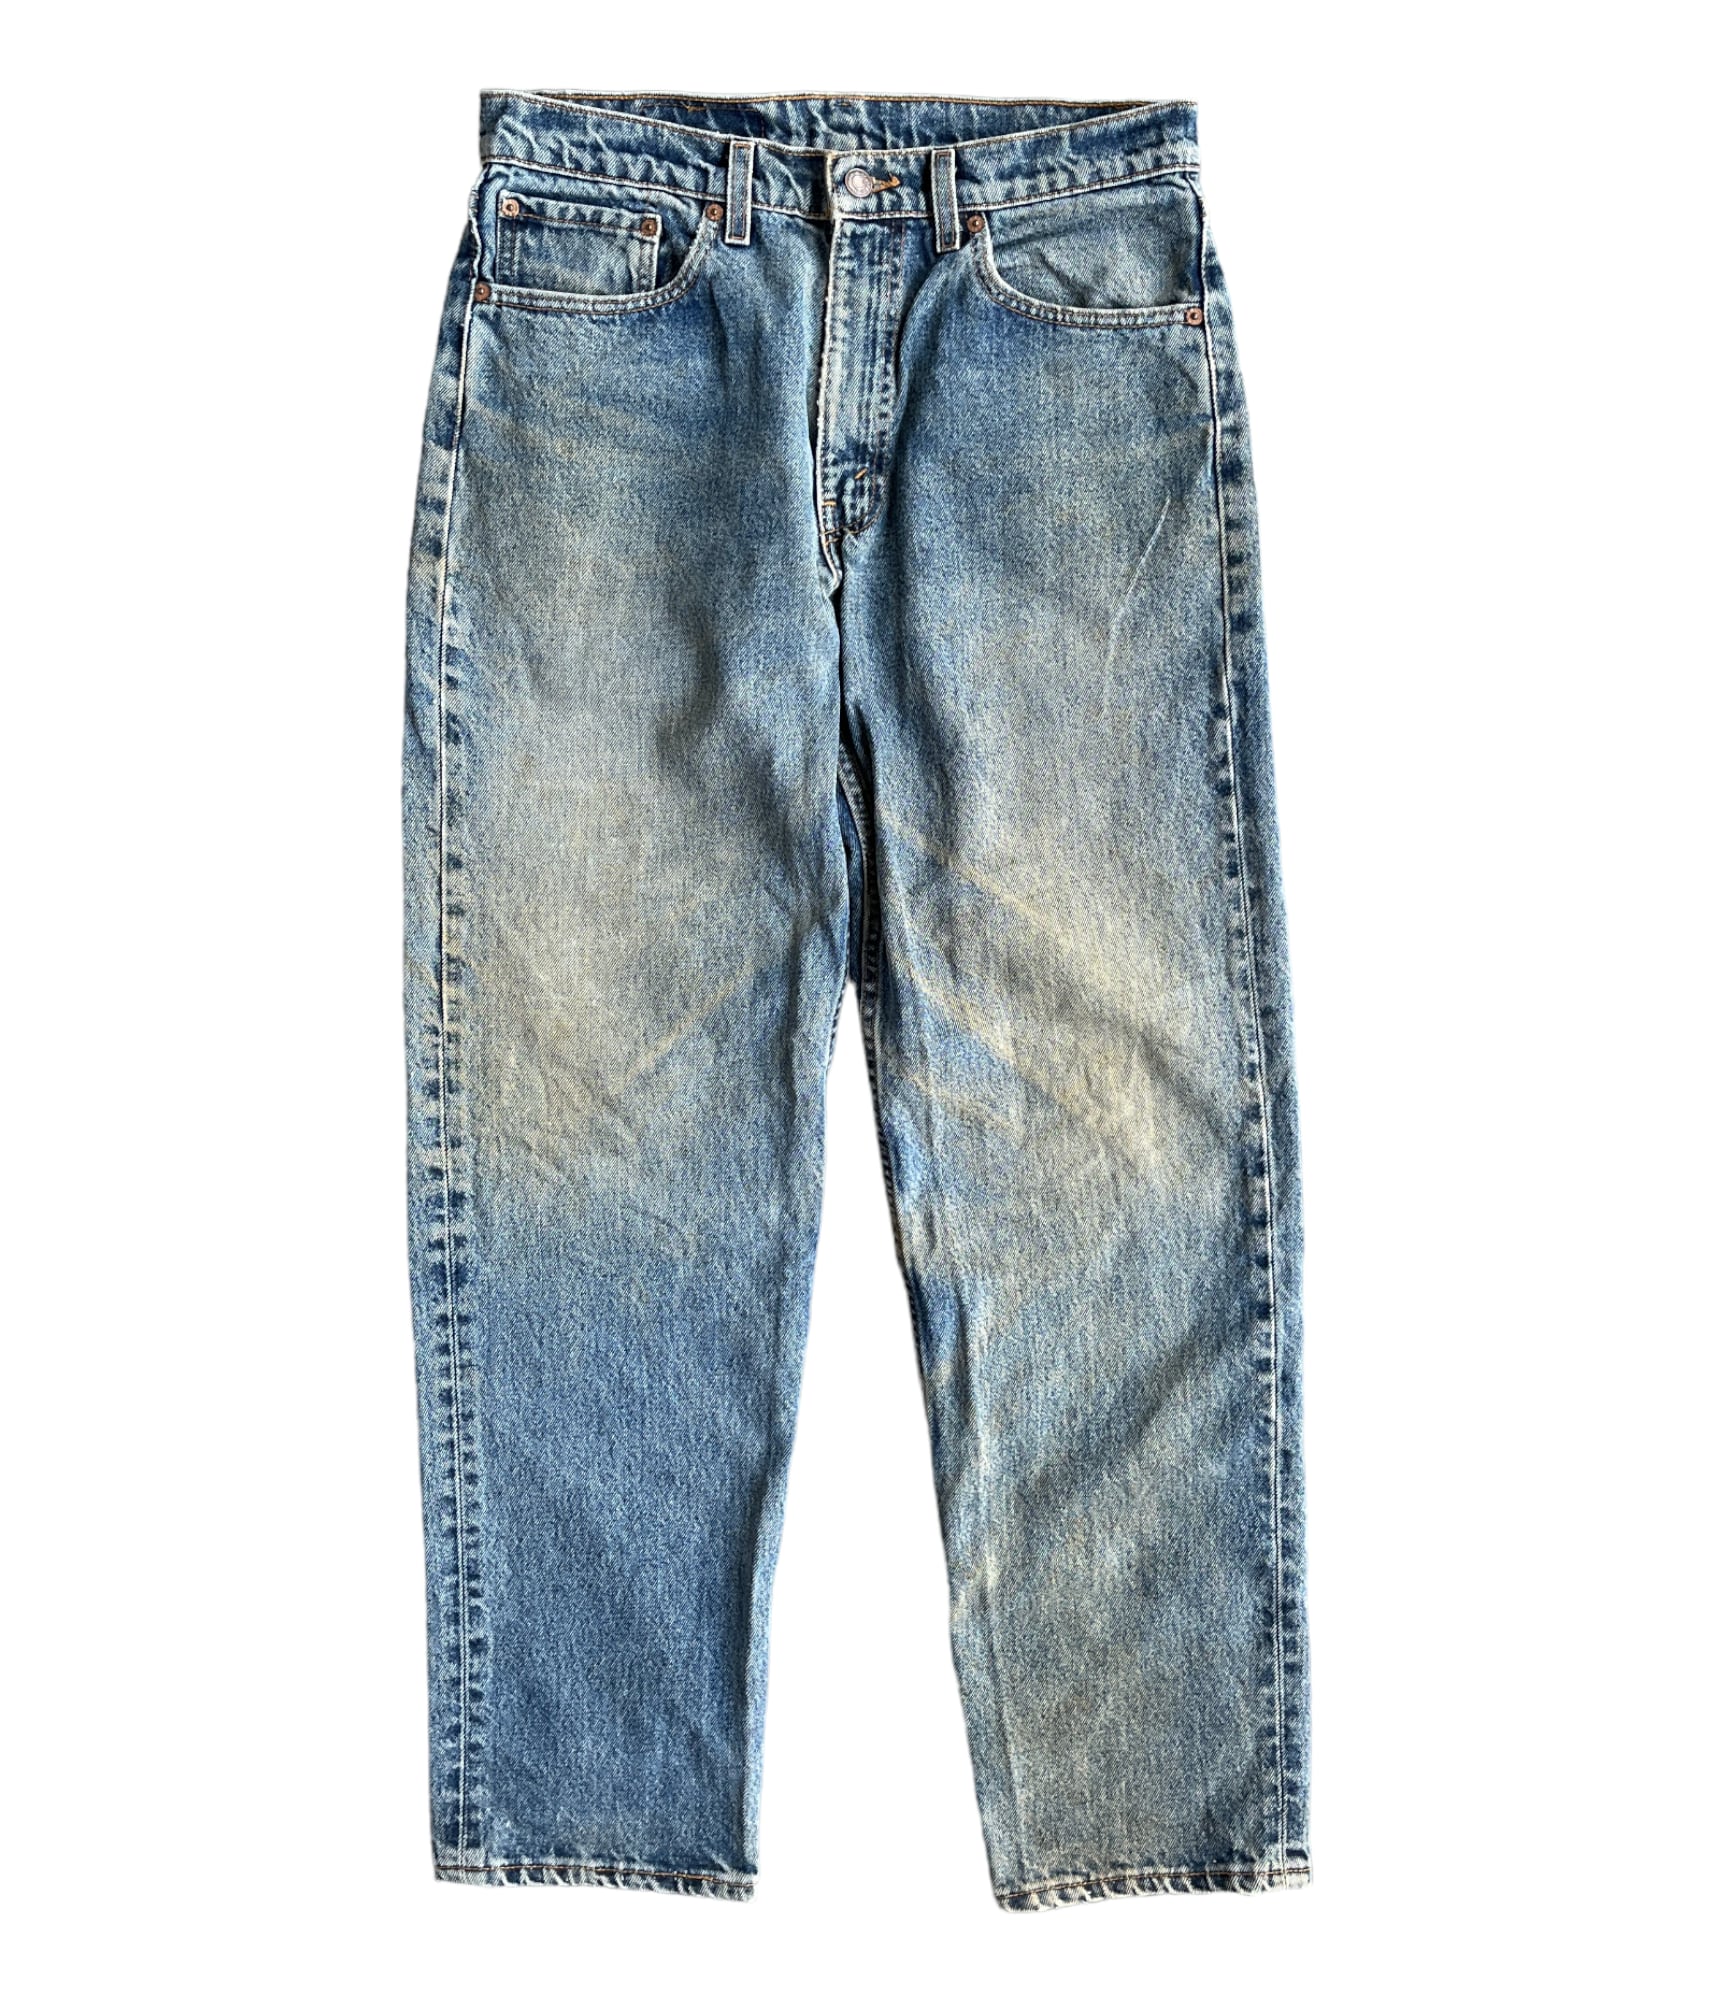 Levi's Denim pants vintage 90s MADEINUSA